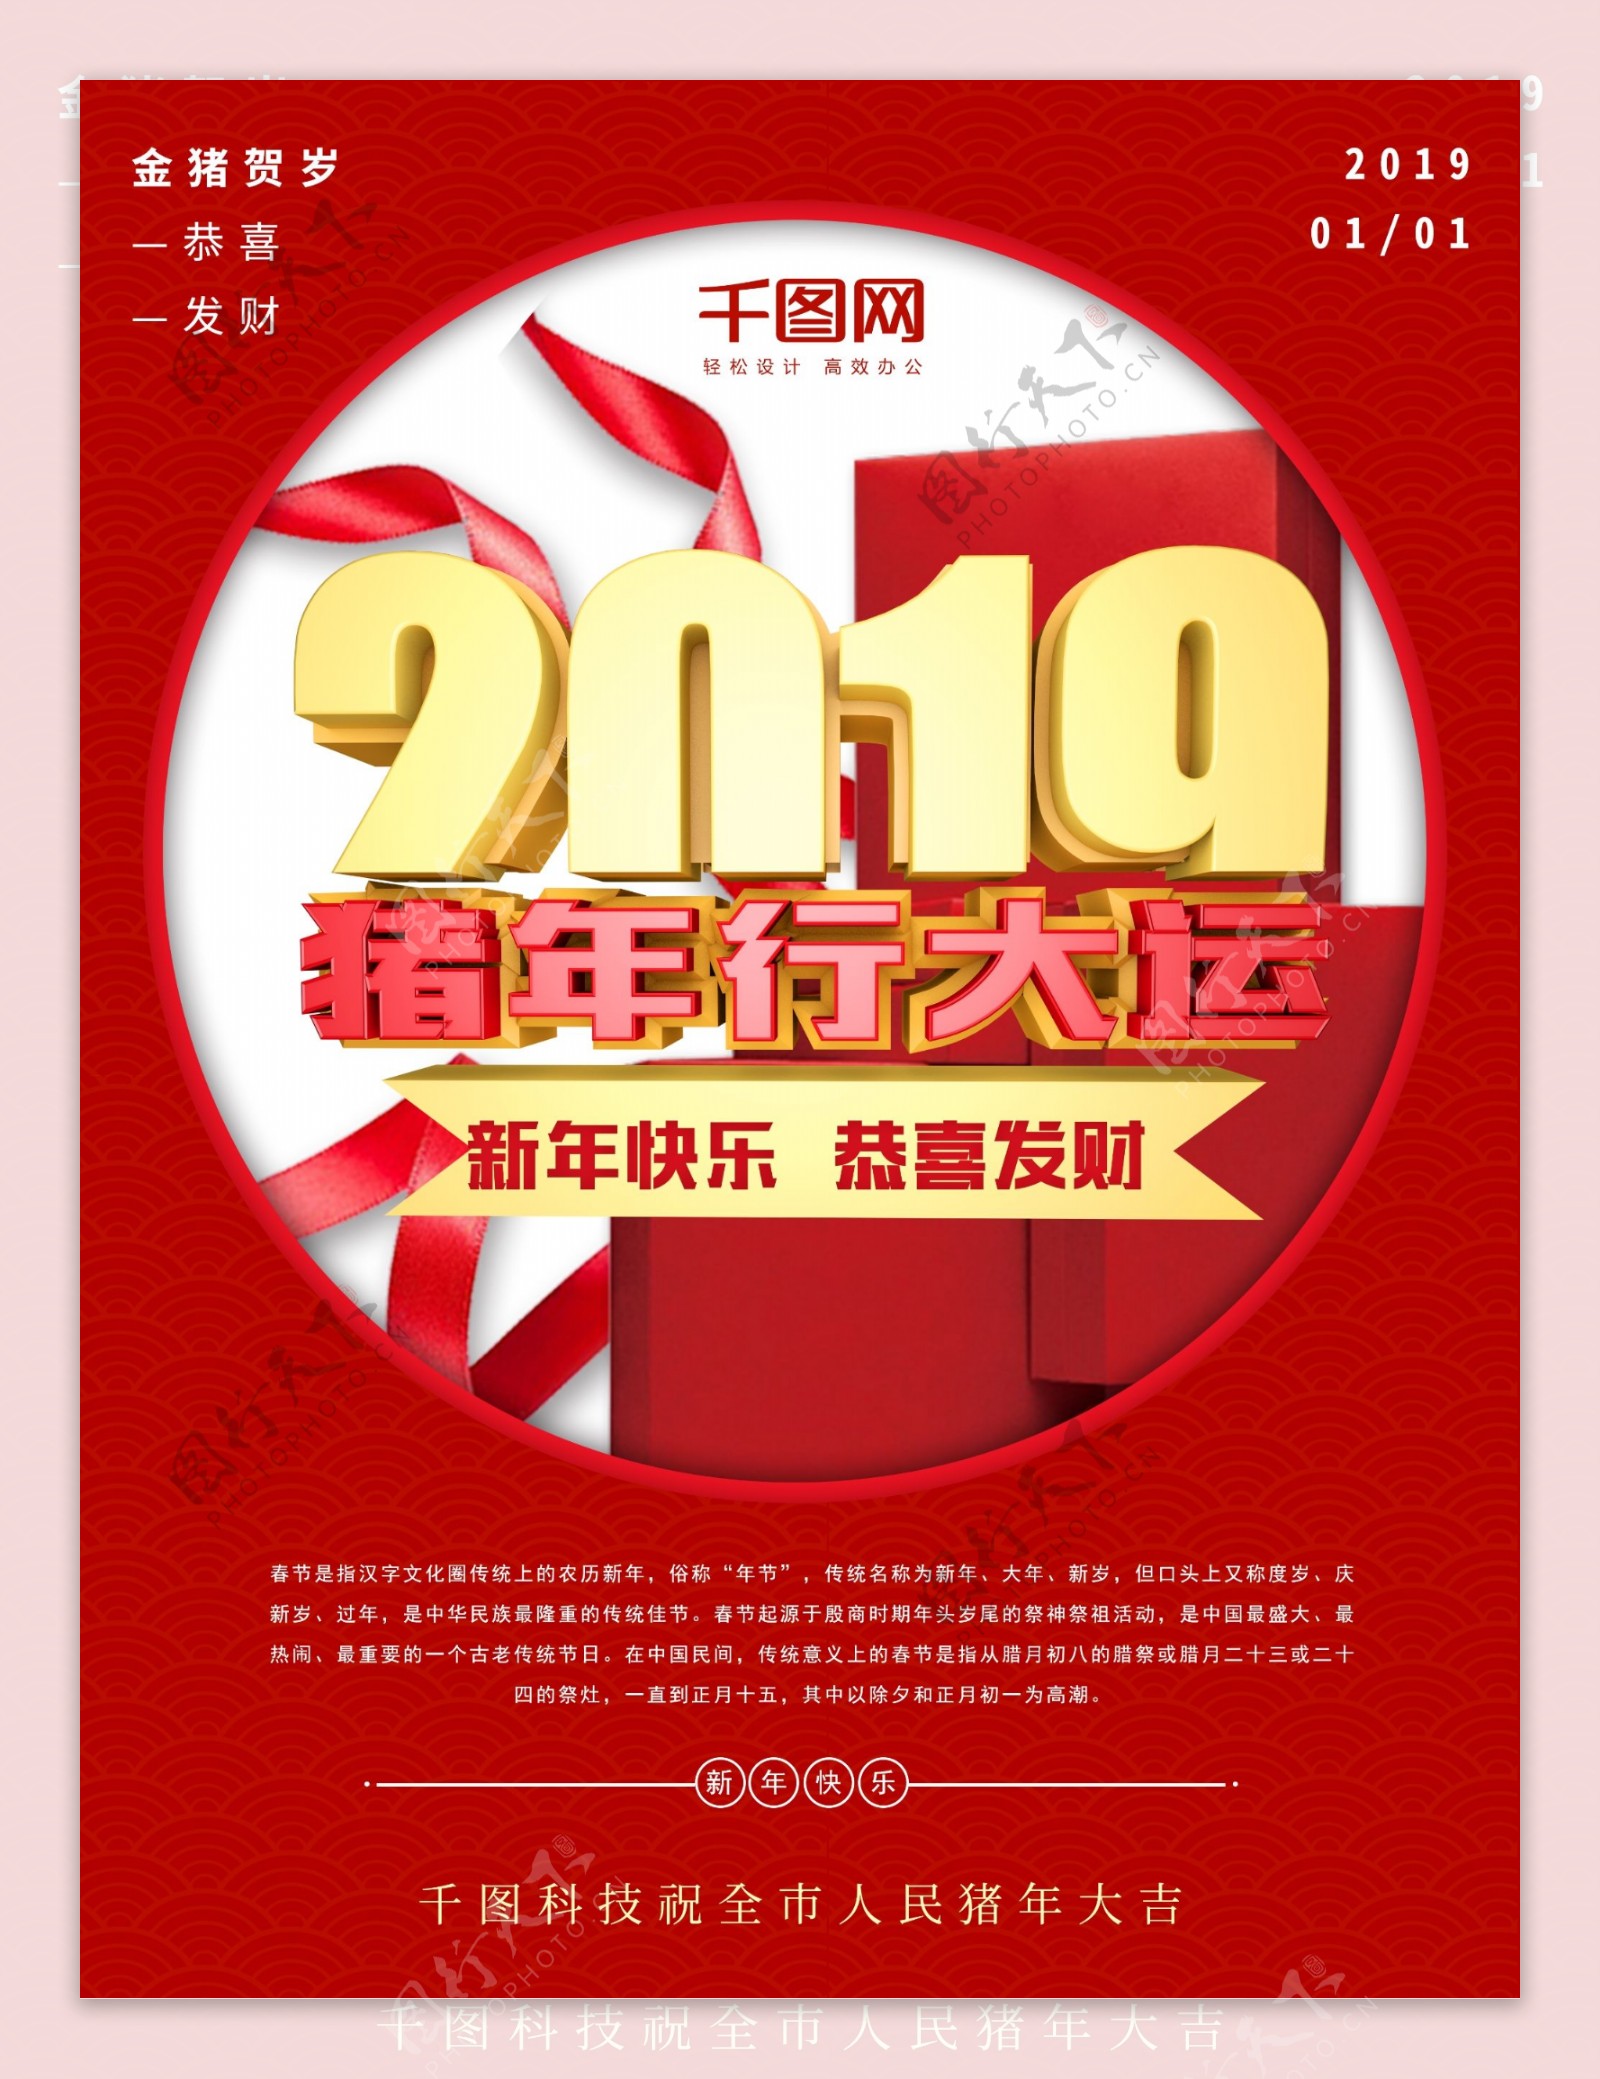 红色喜庆2019猪年行大运宣传海报